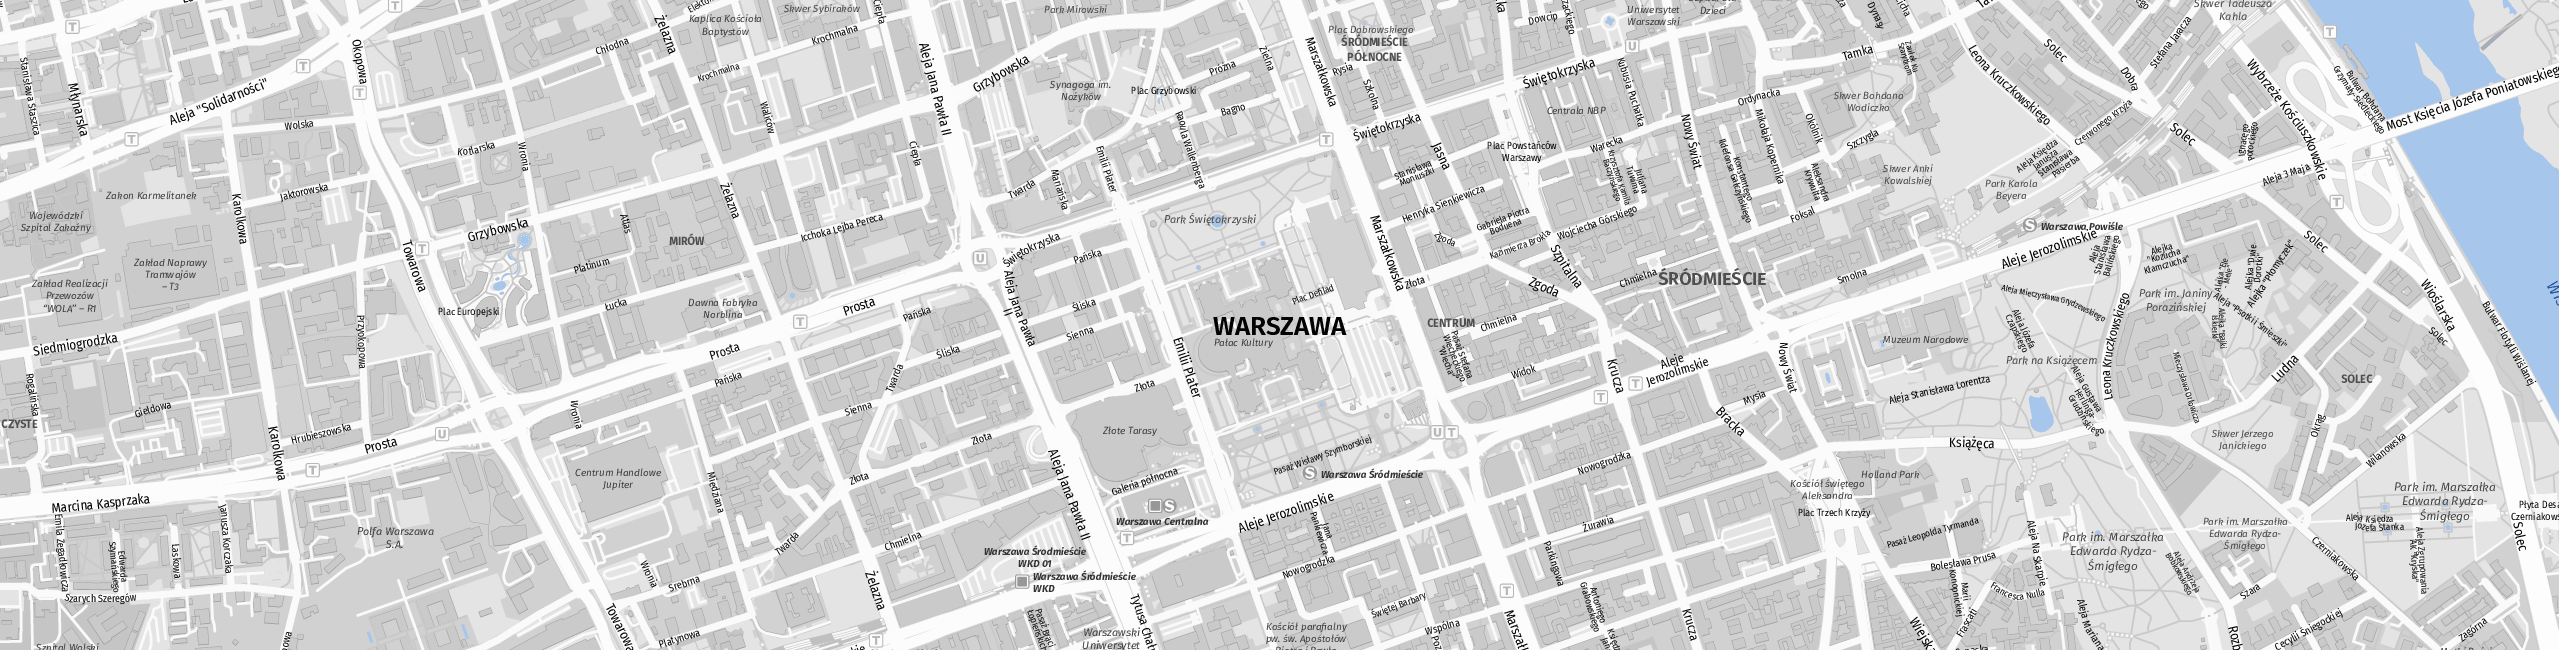 Stadtplan Warsaw zum Downloaden.